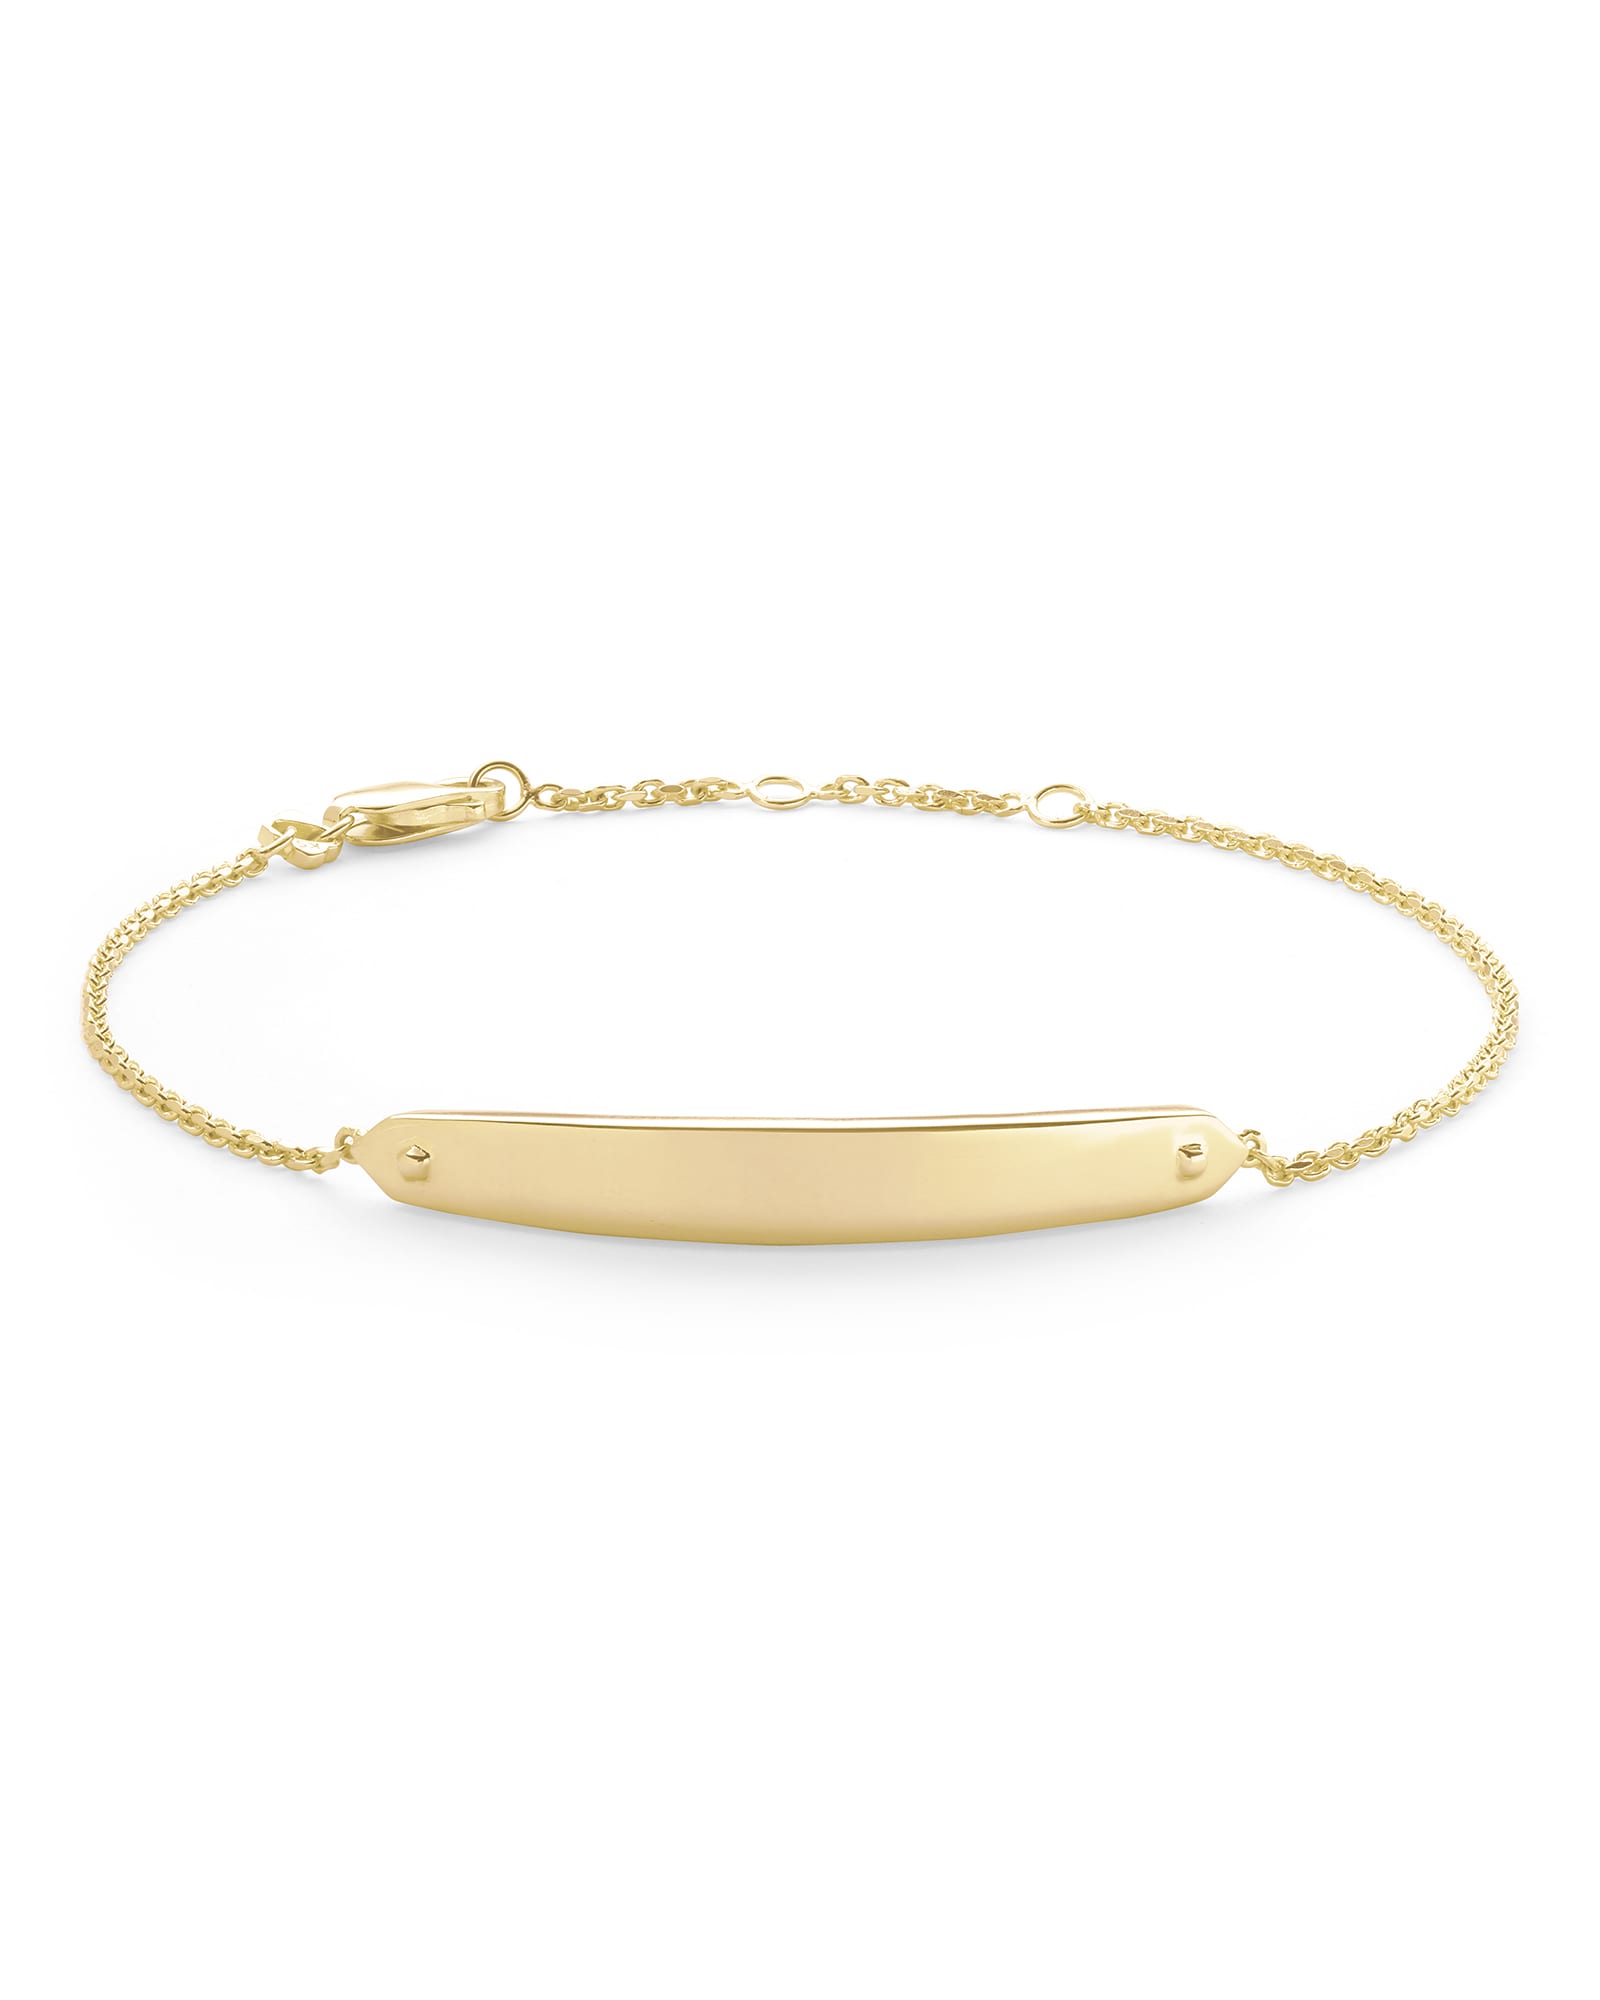 Mattie Bar Delicate Bracelet in 18k Gold Vermeil